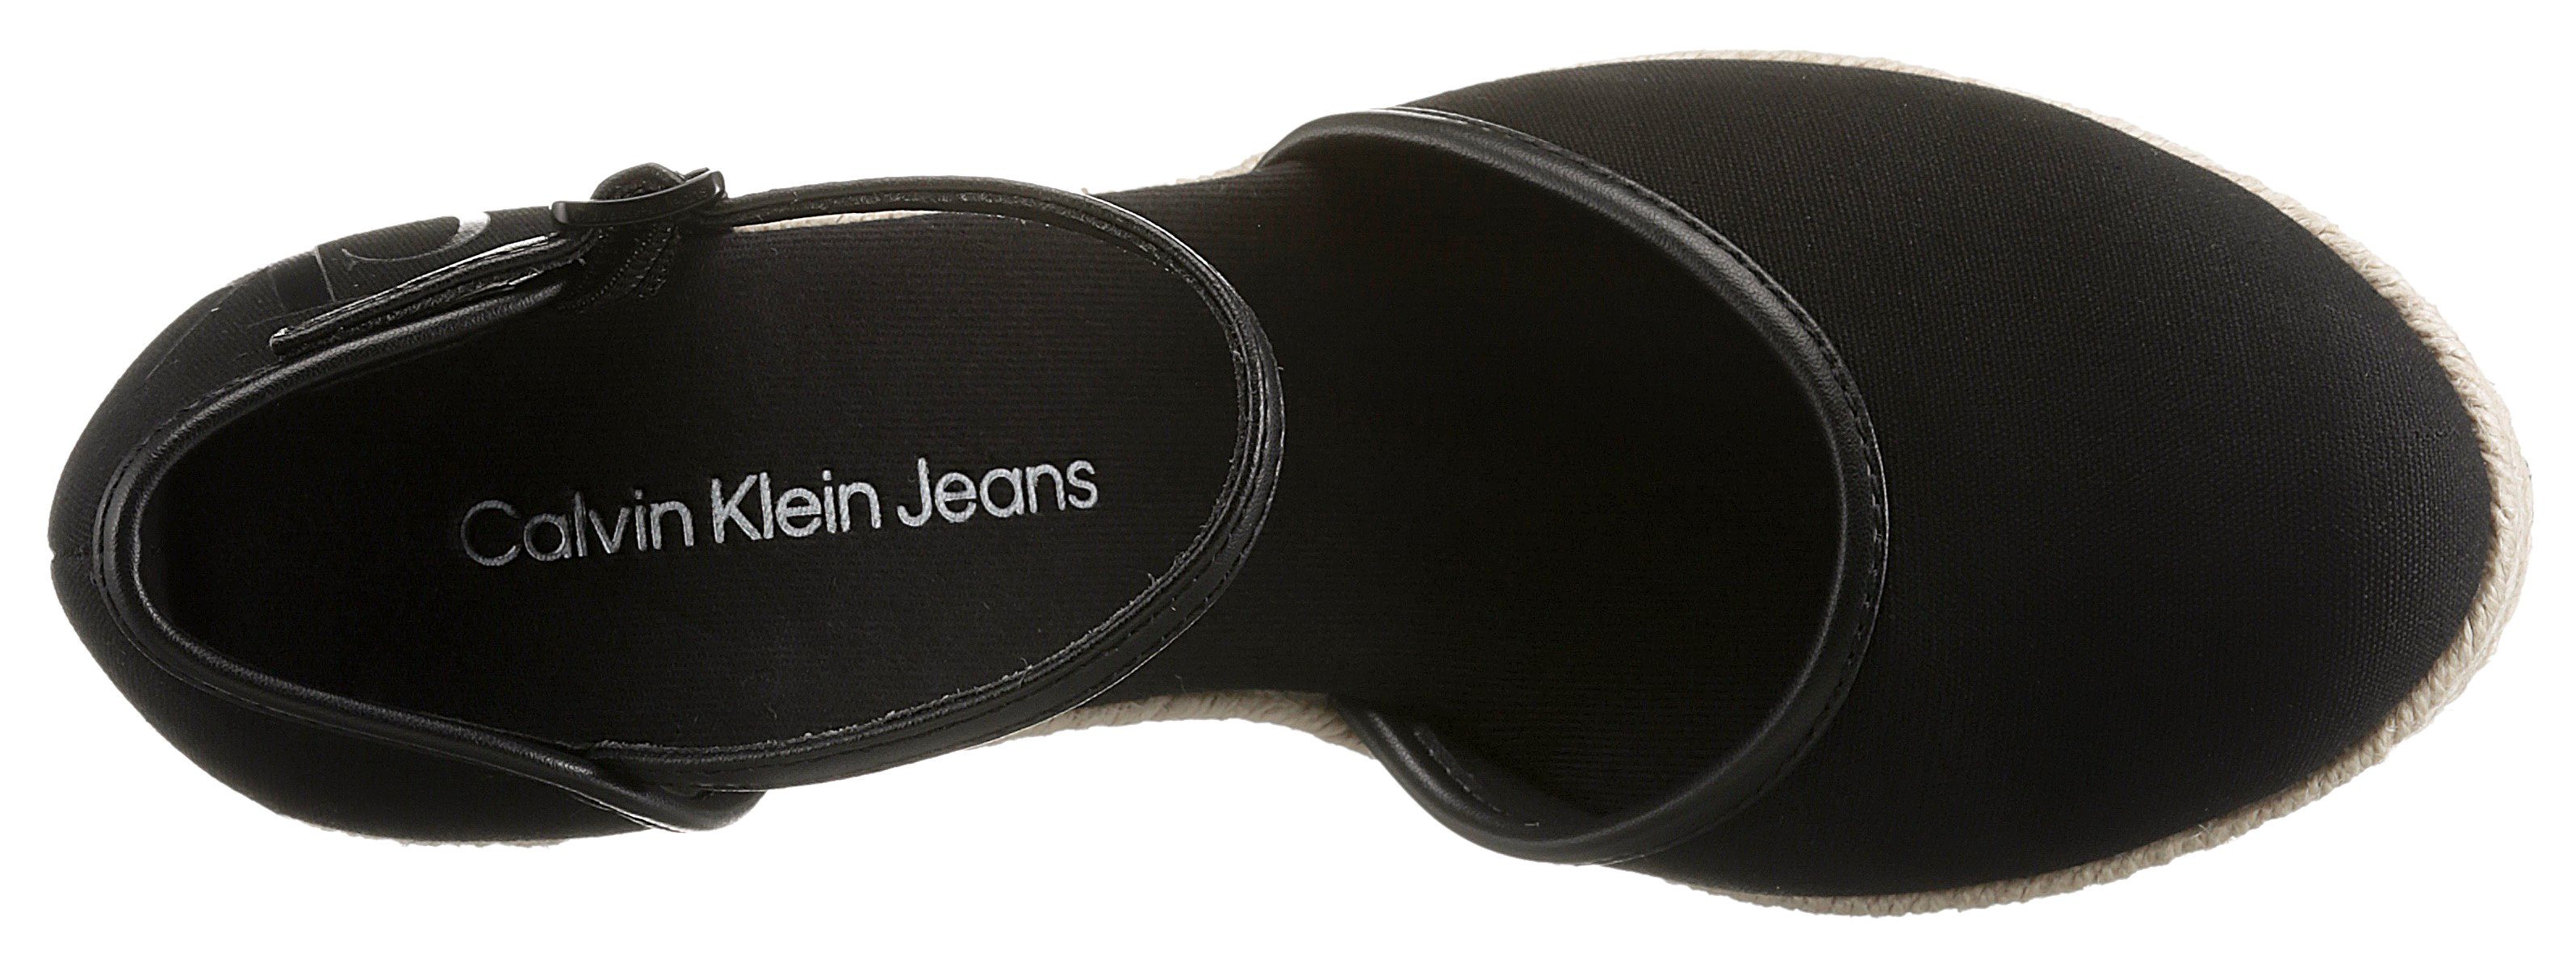 Bastbesatz Klein Jeans schwarz mit Calvin Spangenpumps